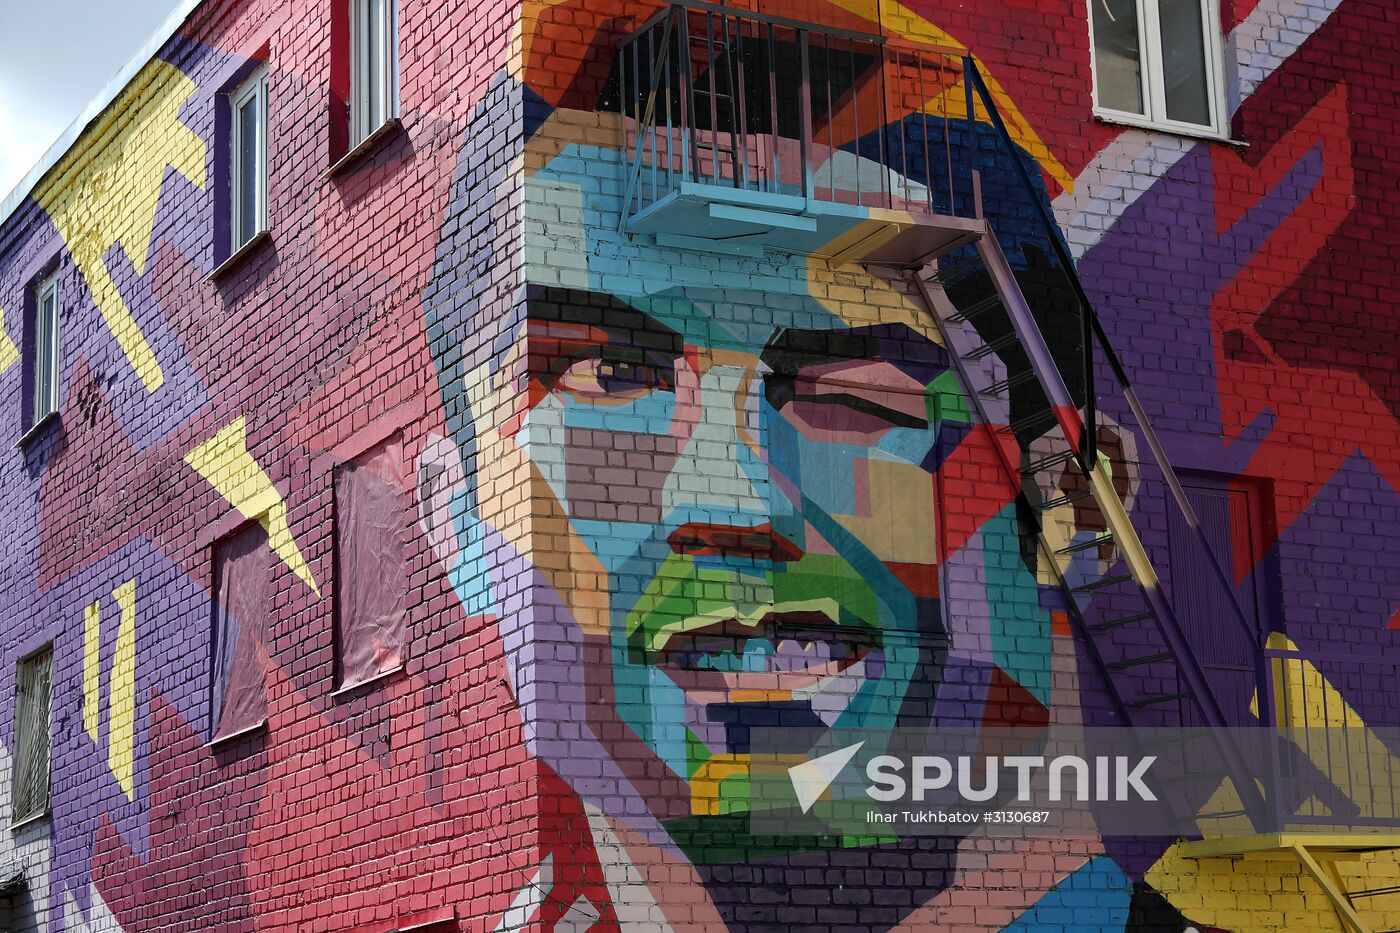 Graffiti in Kazan featuring portrait of Cristiano Ronaldo